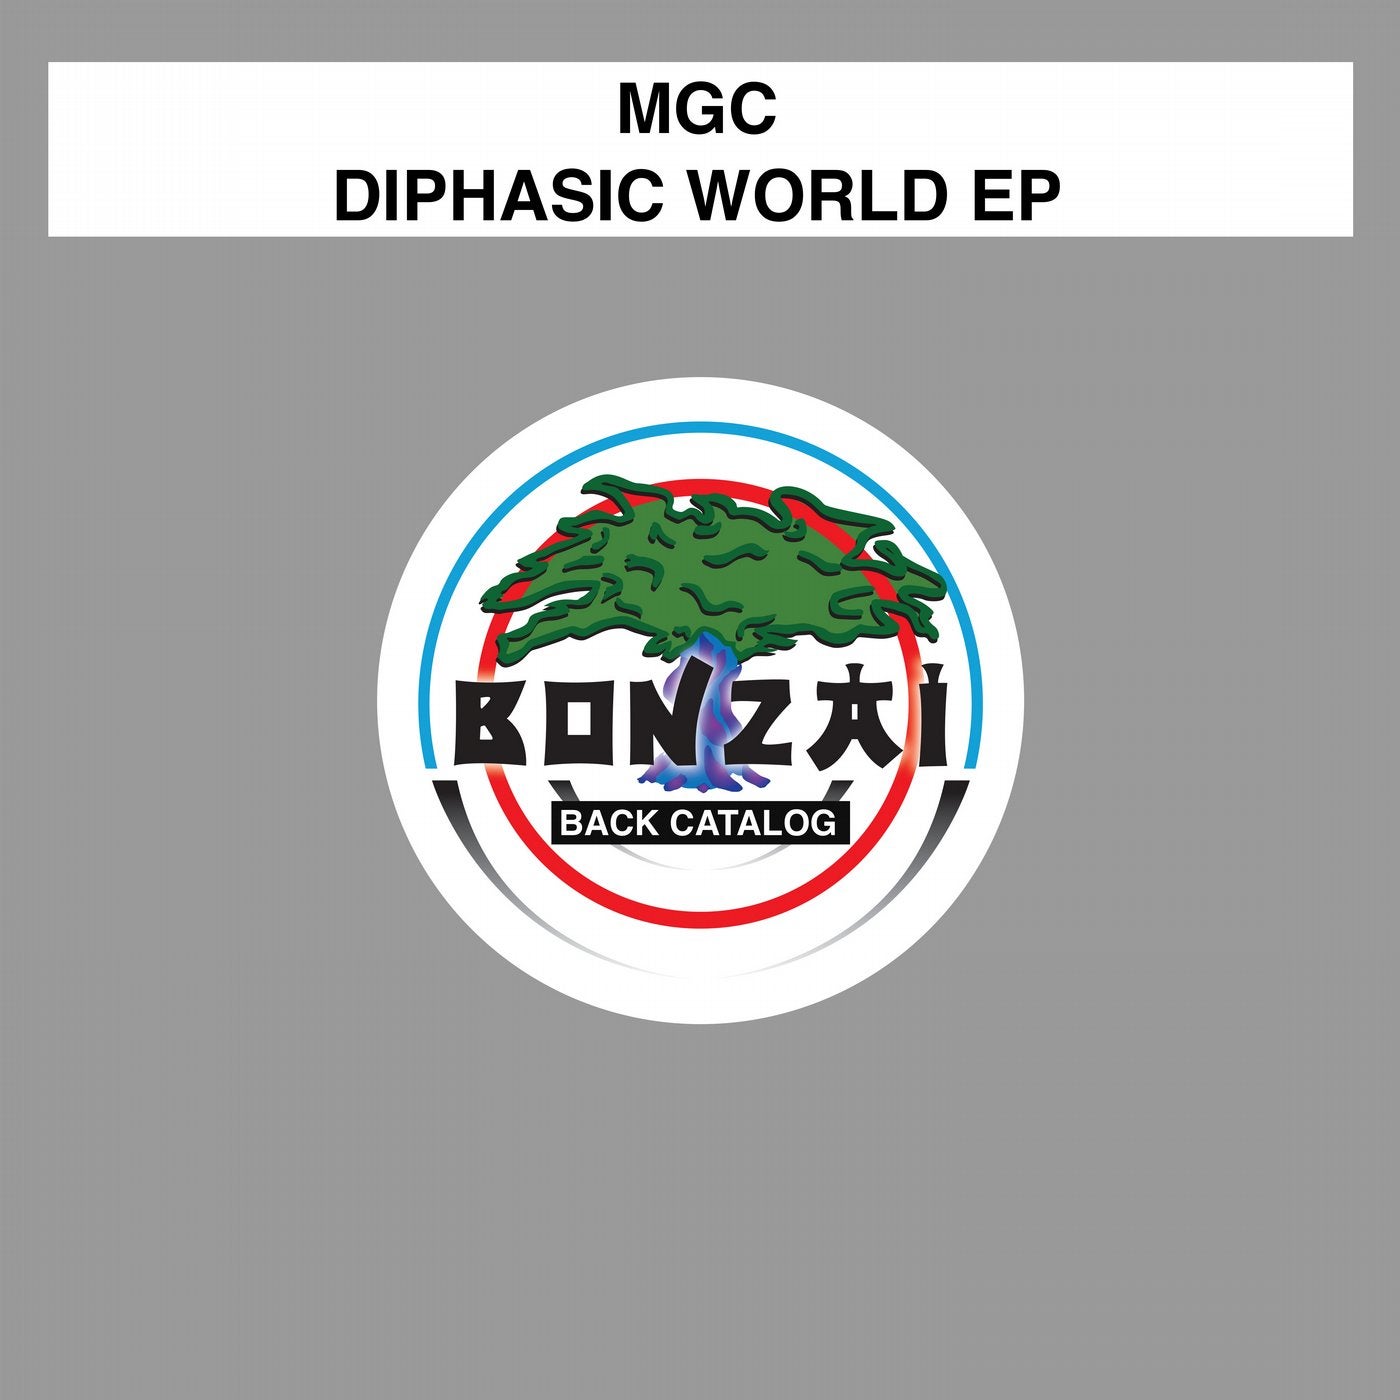 Diphasic World EP